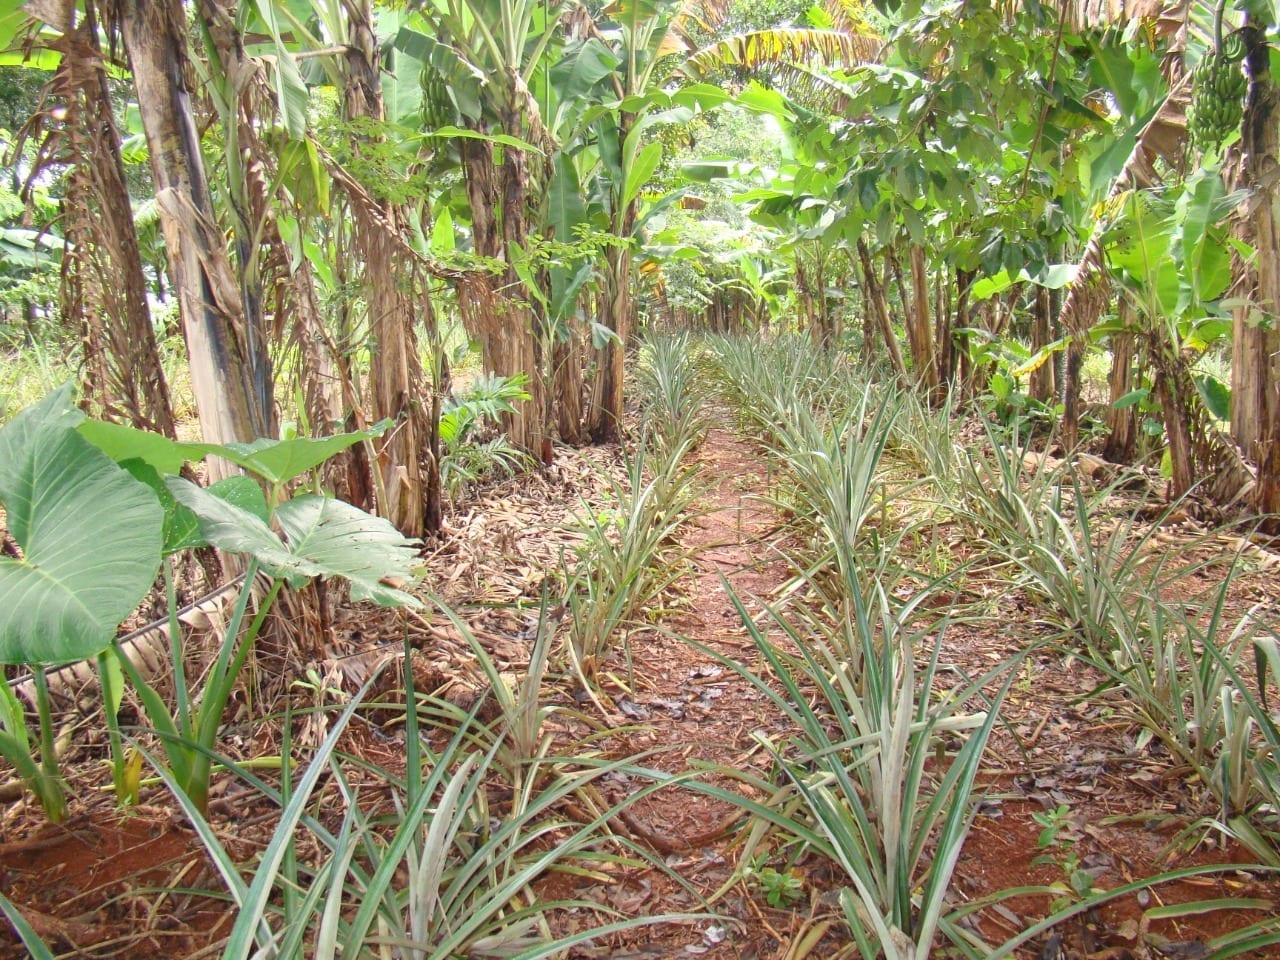 Sistemas agroflorestais biodiversos conservam e melhoram a qualidade do solo